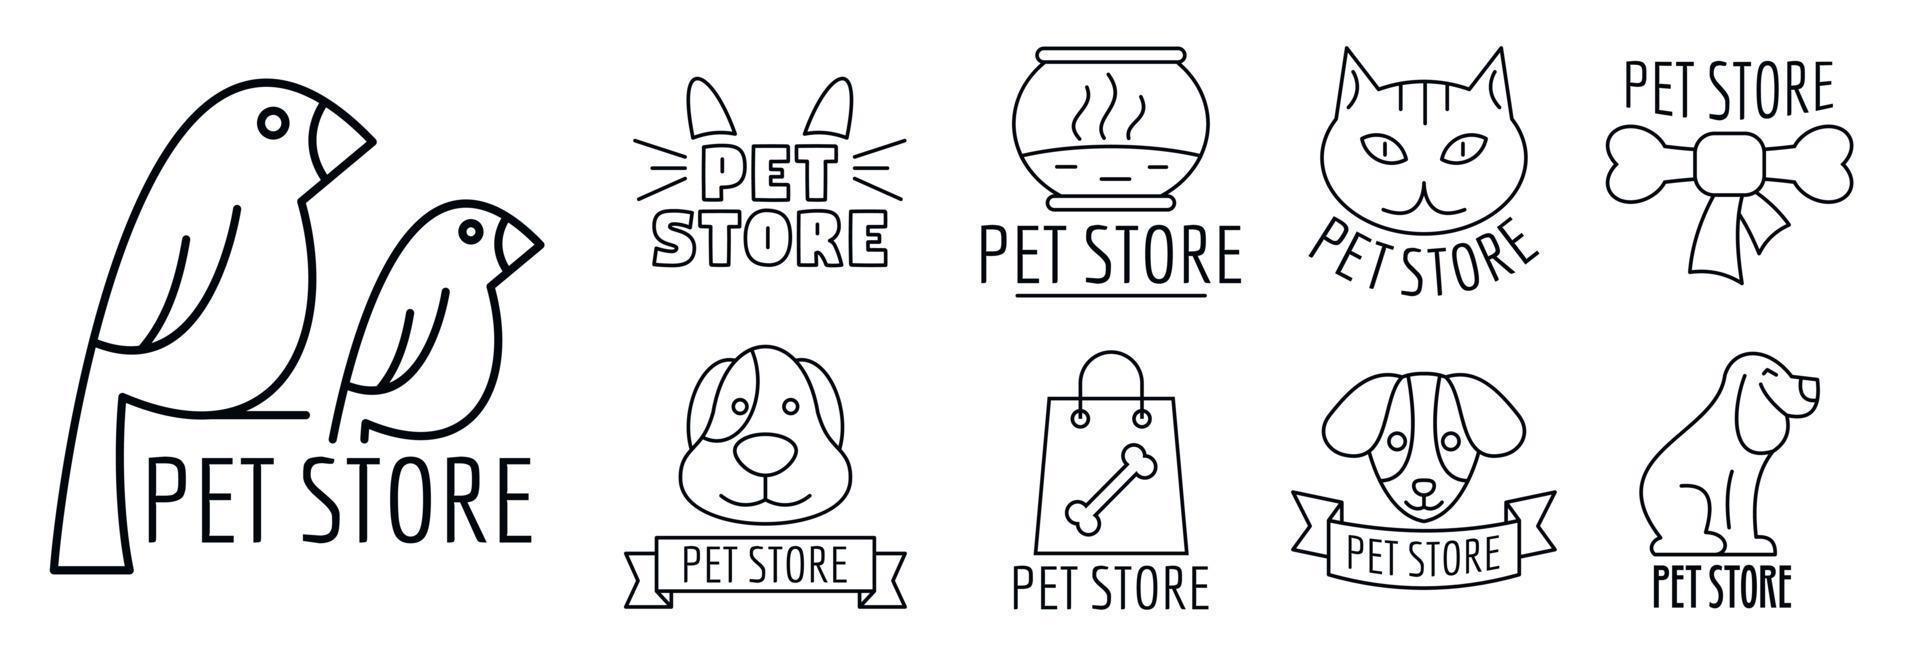 zoo pet shop logo set, umrissstil vektor